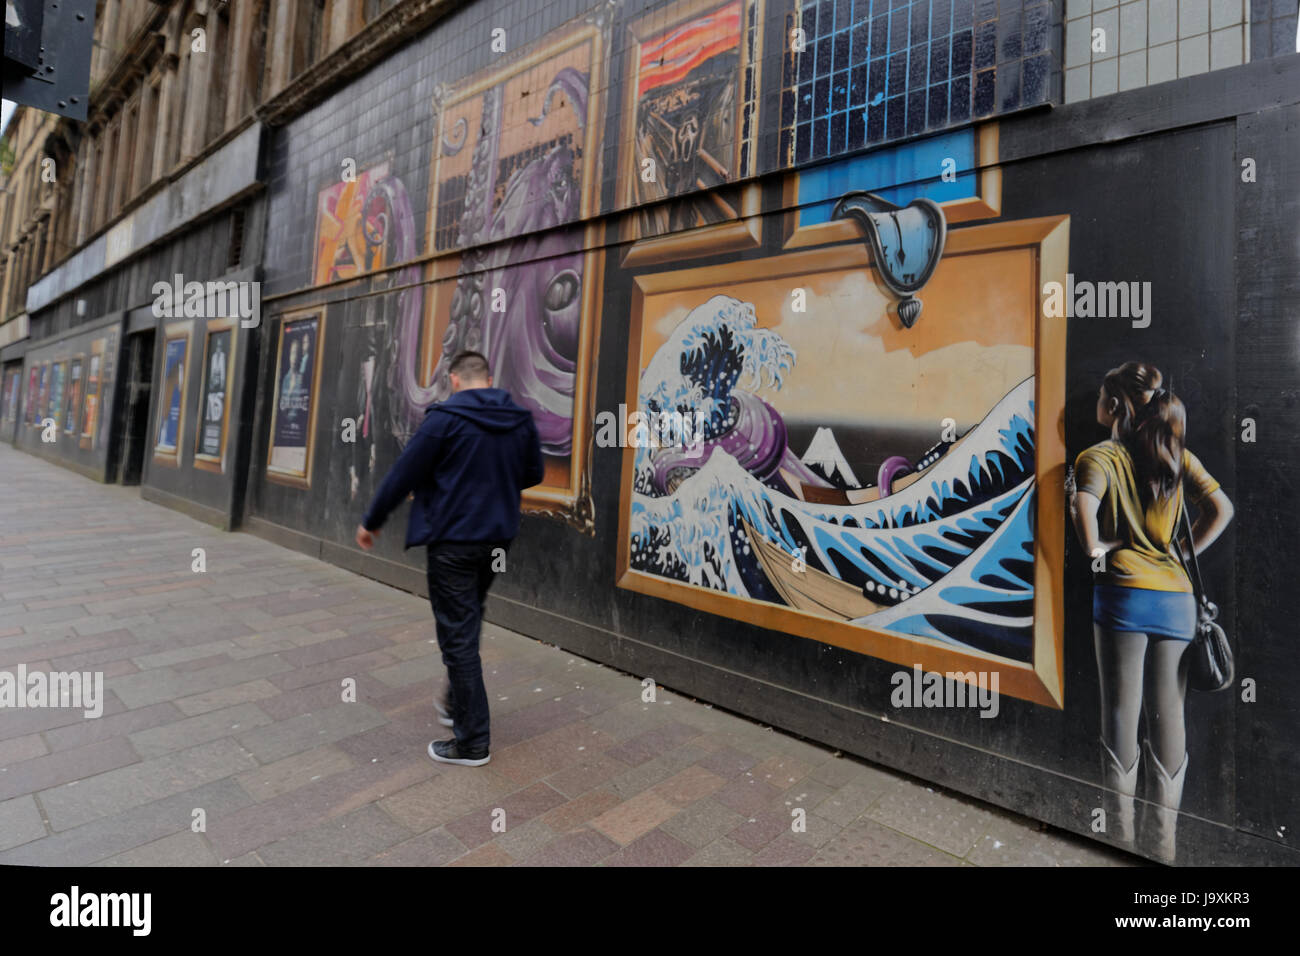 Glasgow-Kunst im öffentlichen Raum-Graffiti auf der Argyle Street mit den Auftrag anzeigen Om Website zu bauen um für neues Hotel abgerissen werden Stockfoto